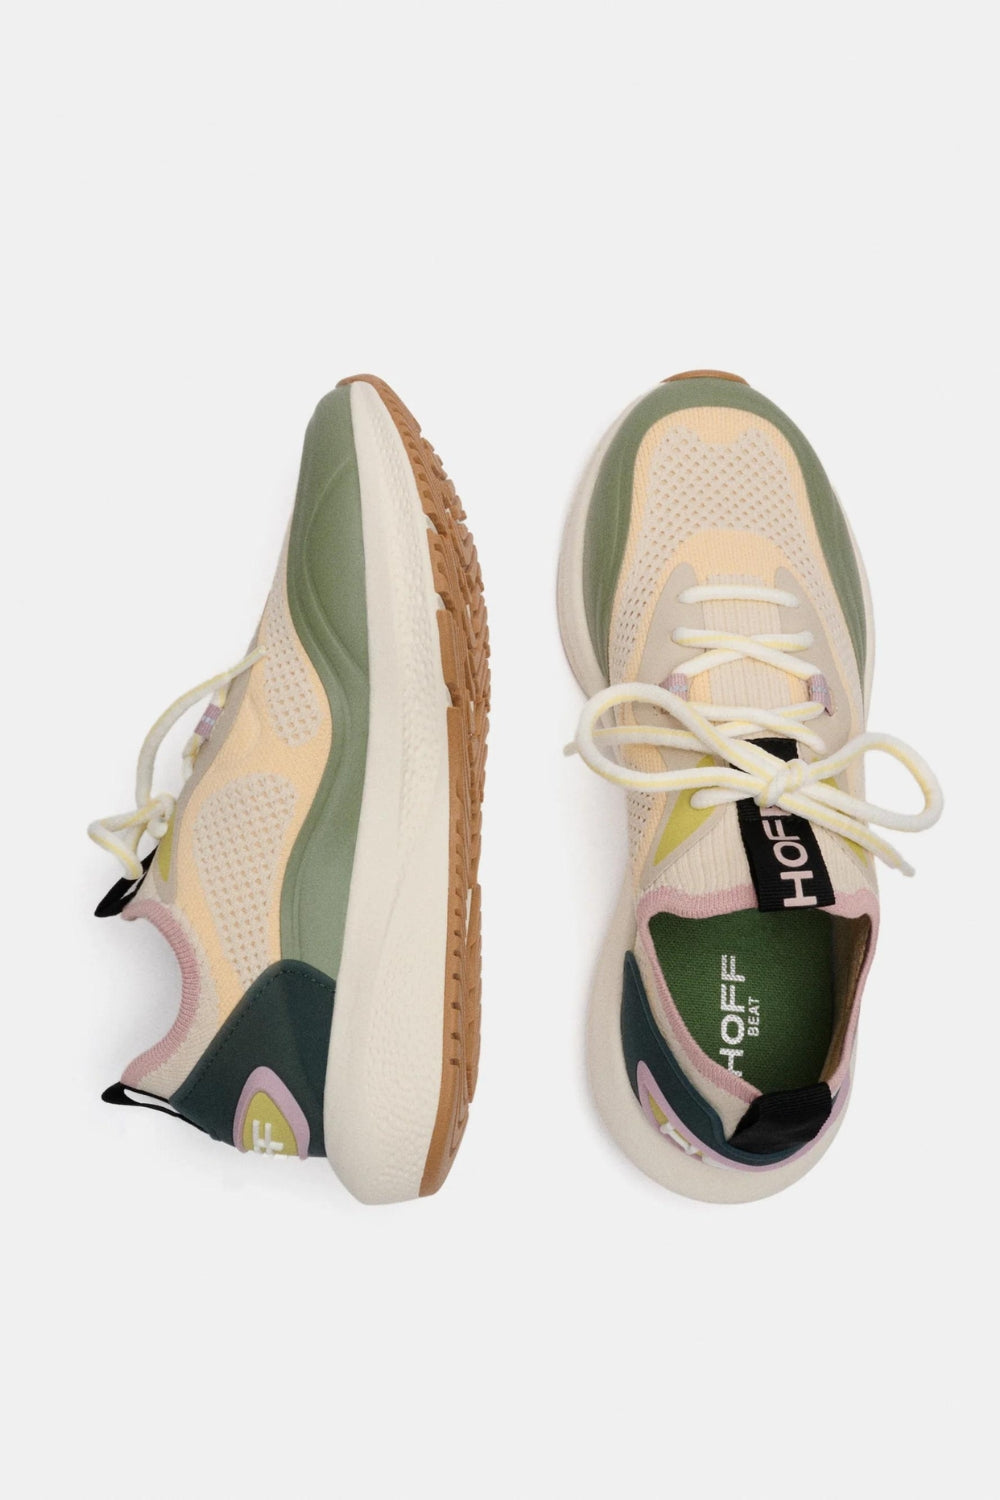 Hoff | Dynamic / Beat Sneaker | Green